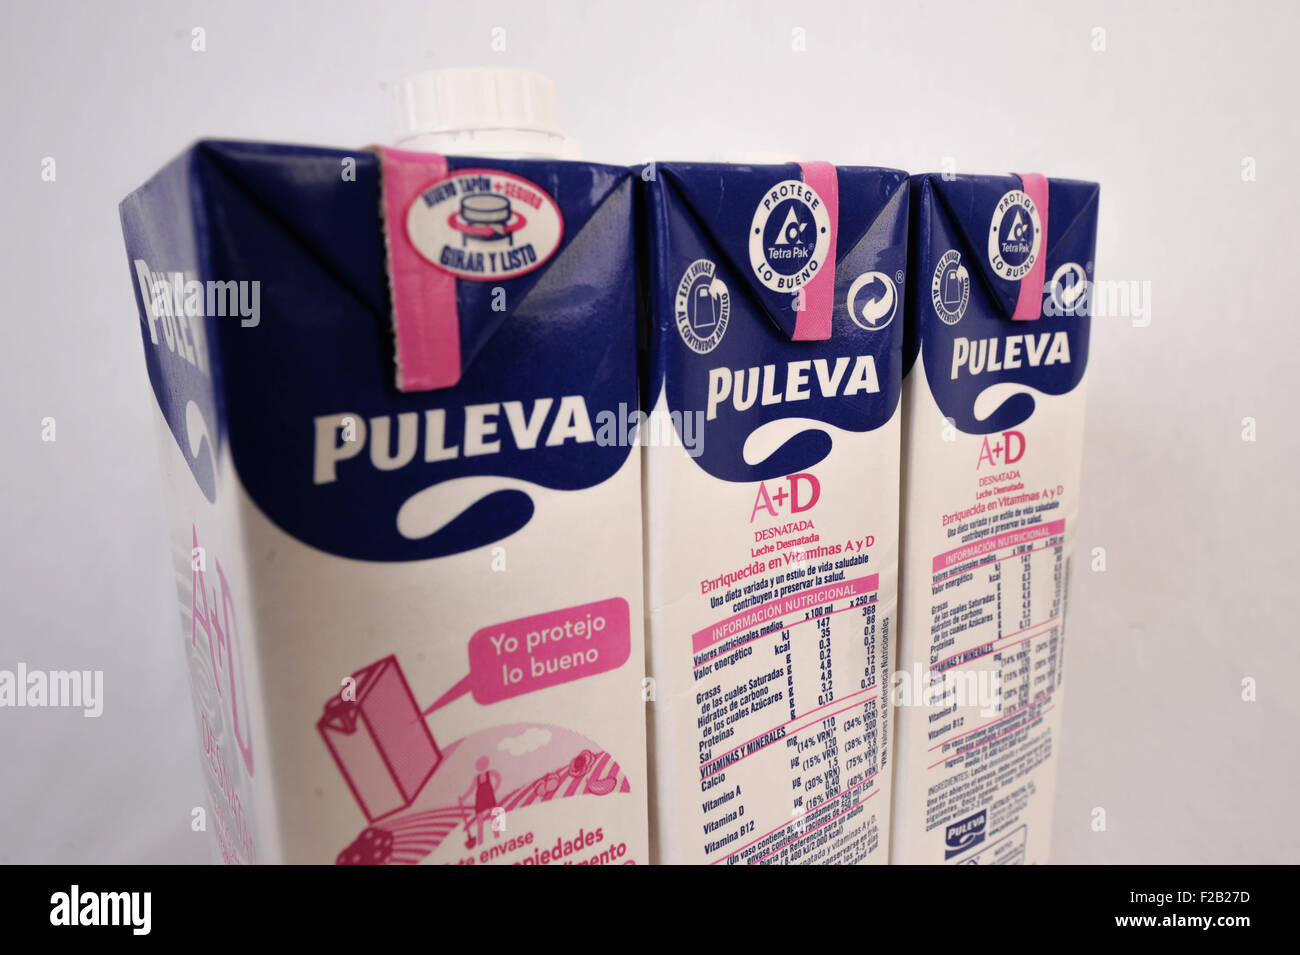 Milk of brand Puleva-leche de la marca Puleva Stock Photo